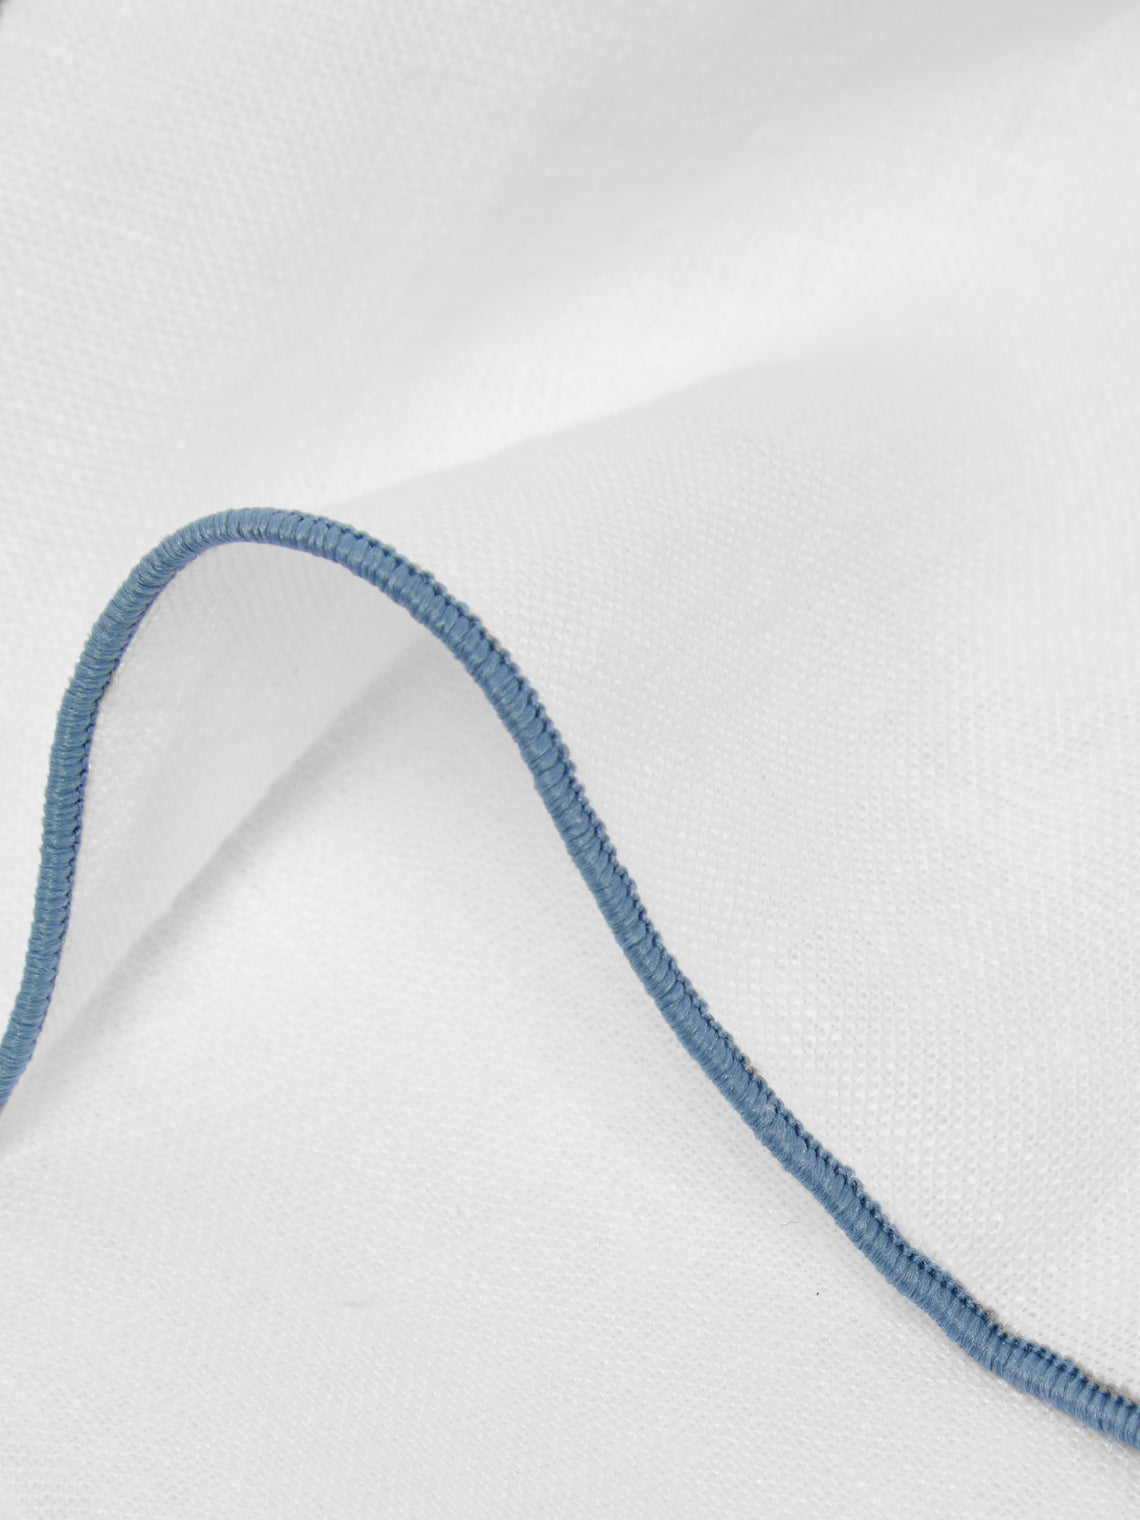 Madre Linen - Contrast Edge Linen Napkin (Set of 4) - Light Blue - ABASK